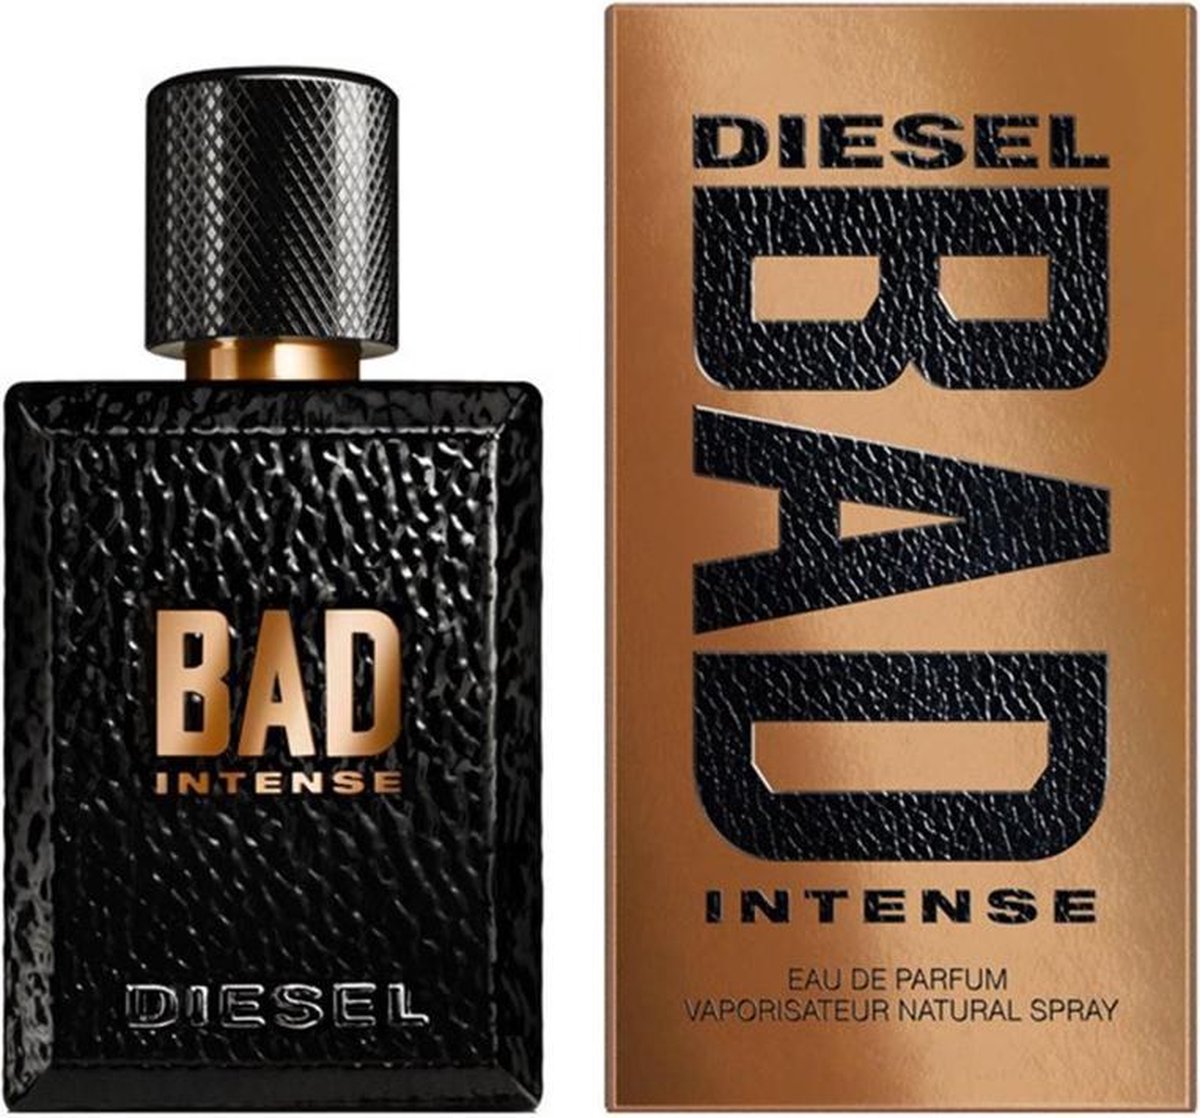 Diesel Bad Intense by Diesel 125 ml - Eau De Parfum Spray